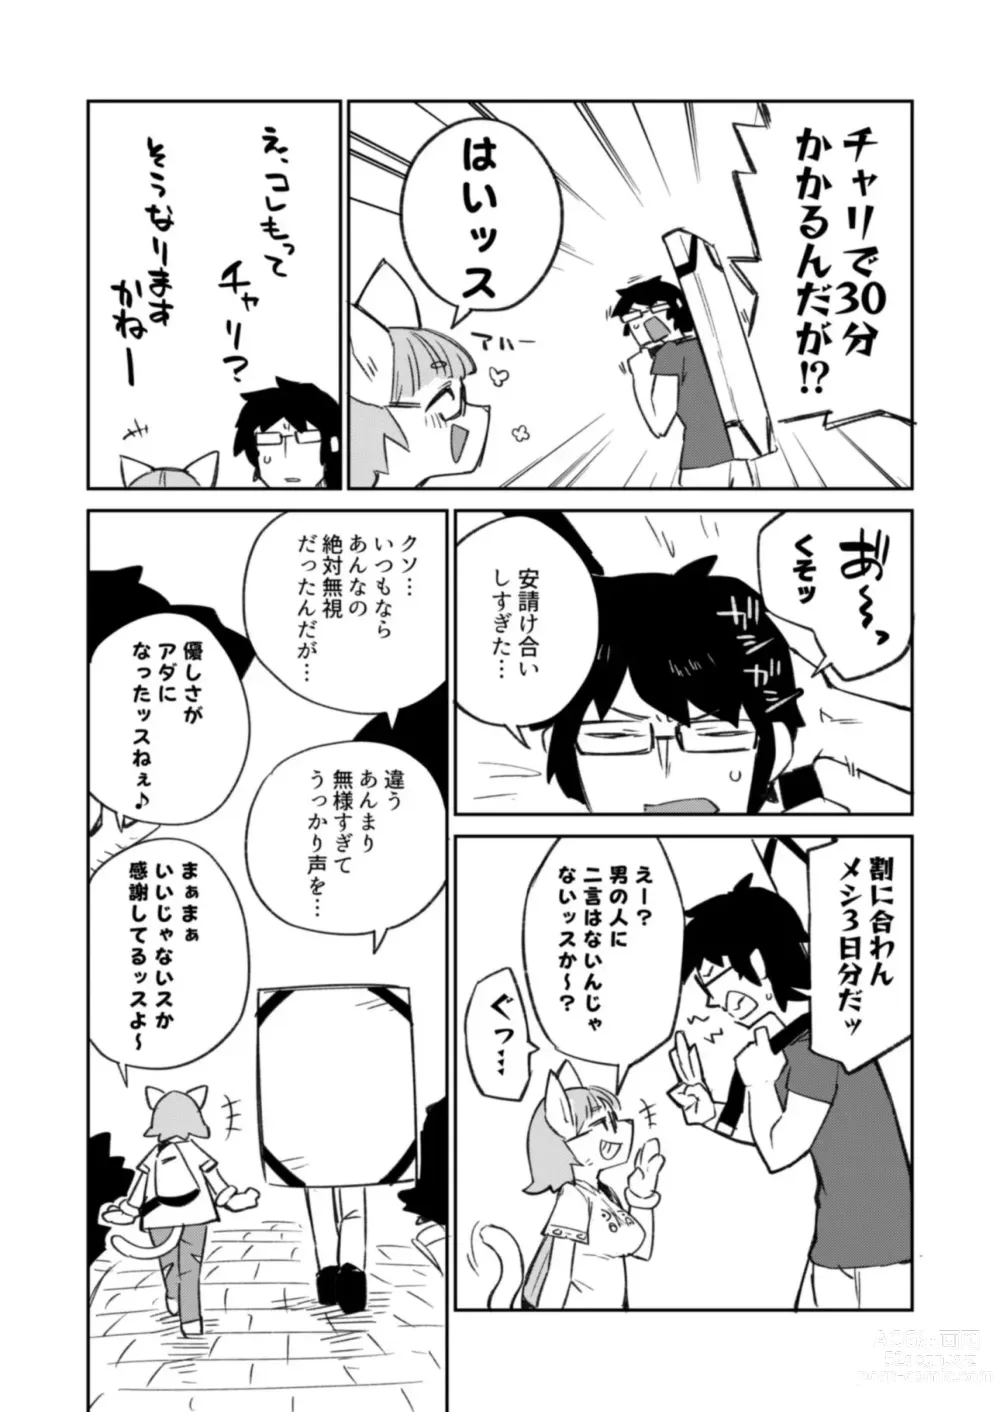 Page 6 of doujinshi Fujun Ishuzoku Kouyuu Report #2